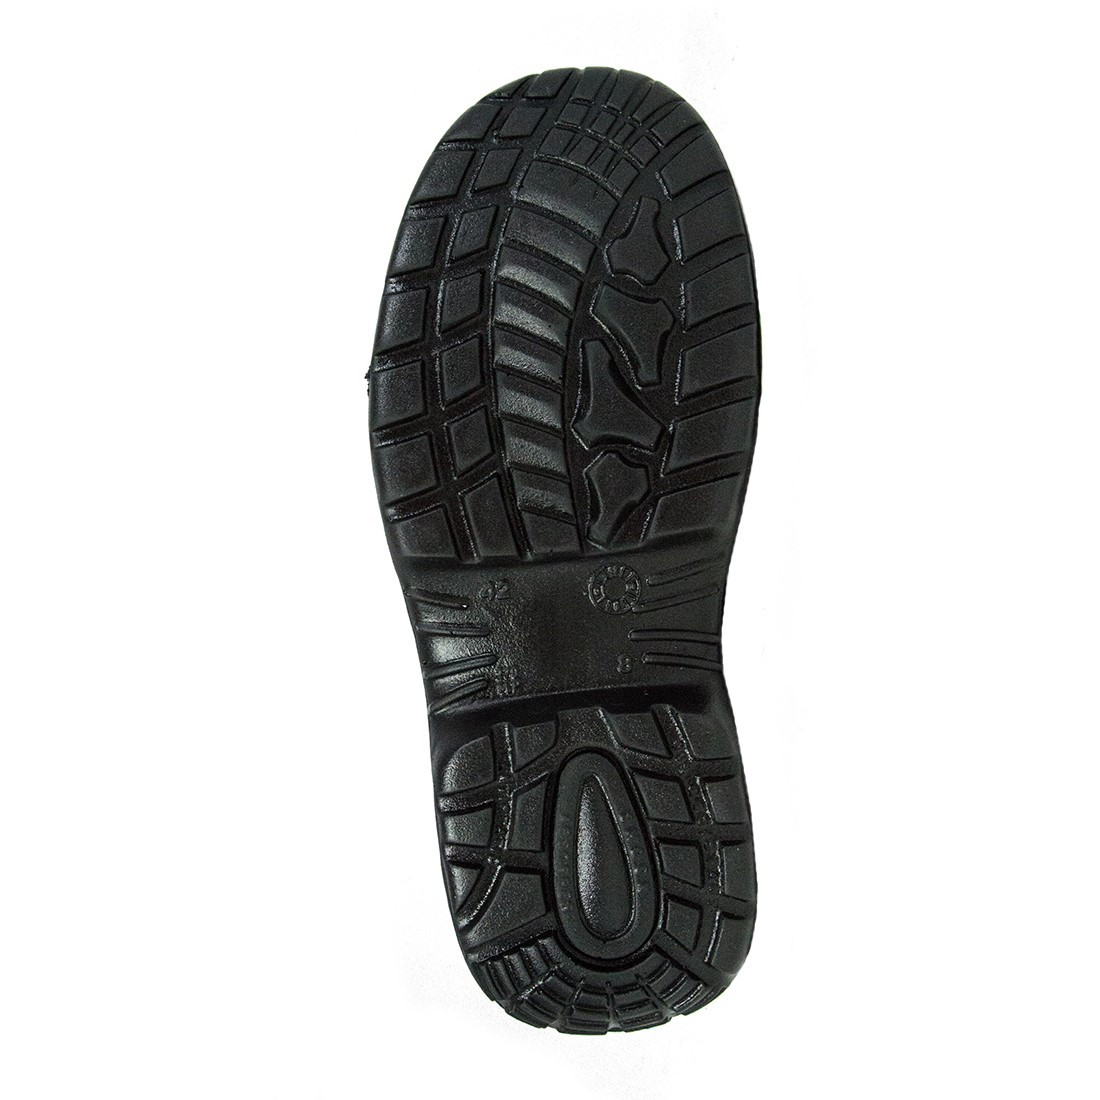 Bocanci Chester Top S3 SRC - Incaltaminte de protectie | Bocanci, Pantofi, Sandale, Cizme